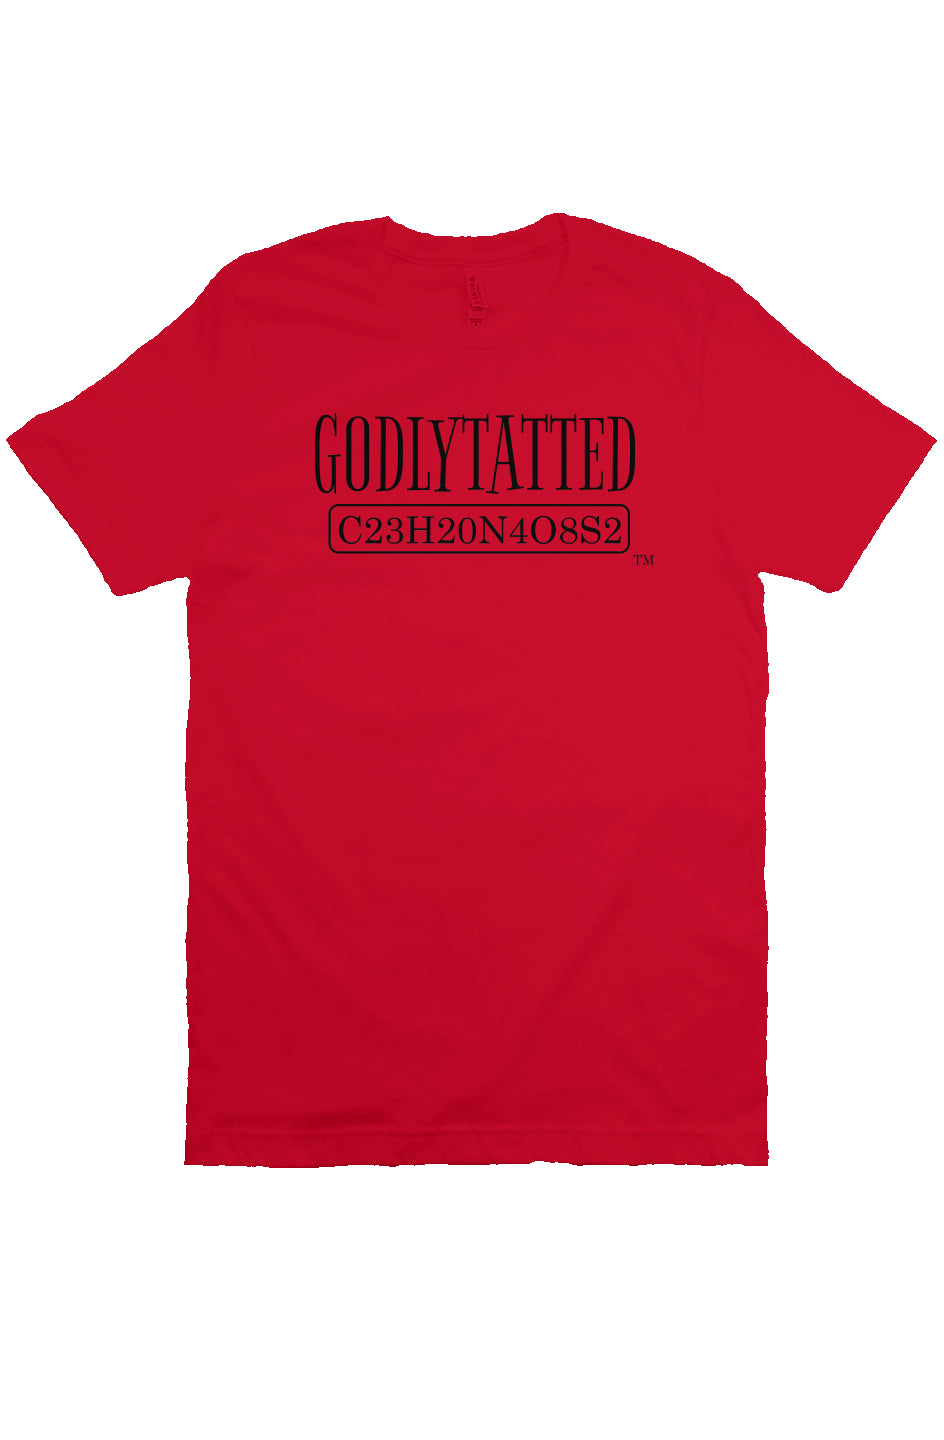 godlytatted - adult - red - Black logo